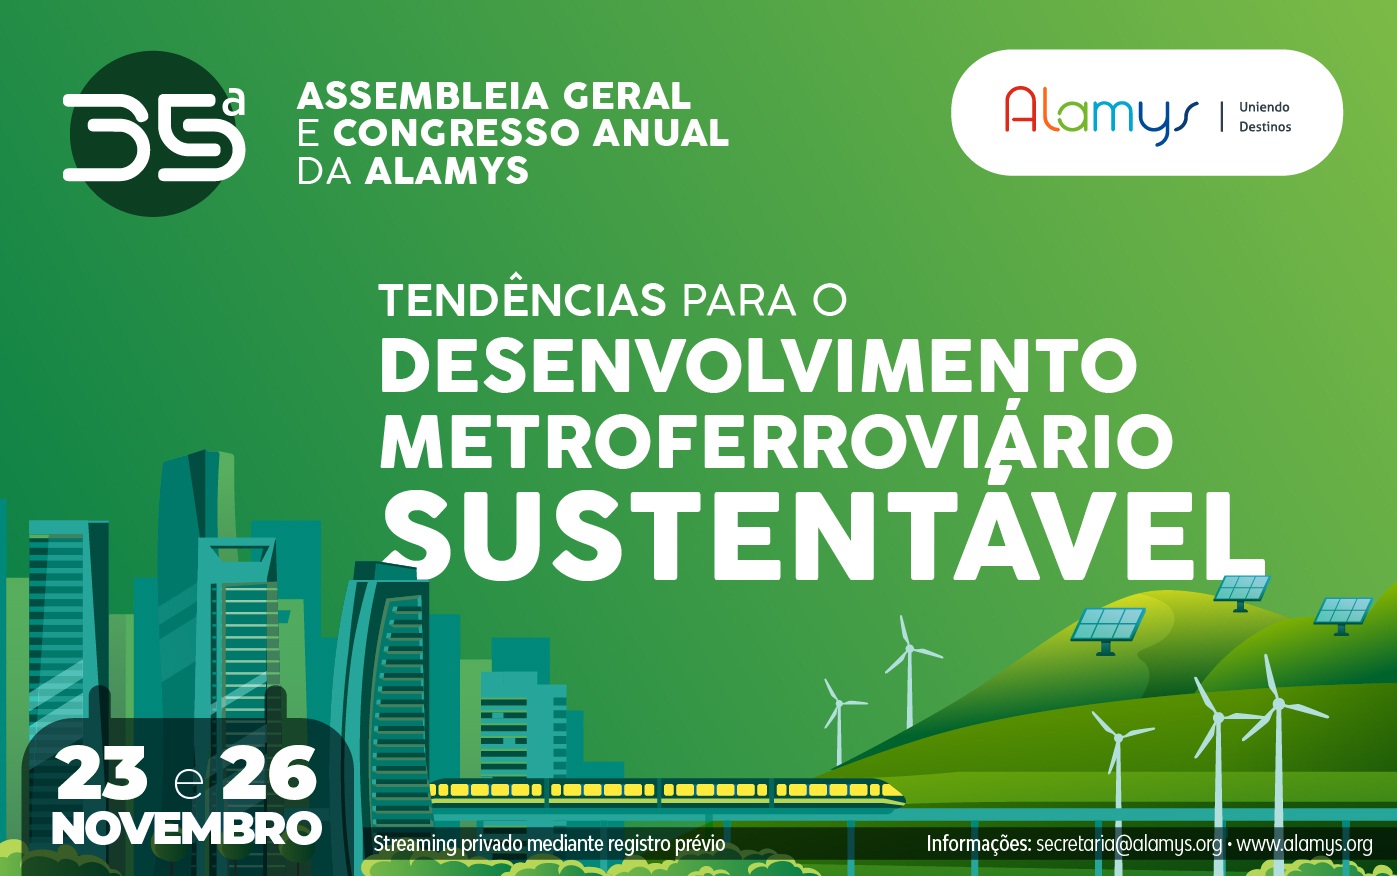 ALAMYS programou sua 35ª Assembleia Geral  e o Congresso Anual para o período de 23 a 26 de novembro. O tema geral será: ‘Tendências para o desenvolvimento metroferroviário sustentável’